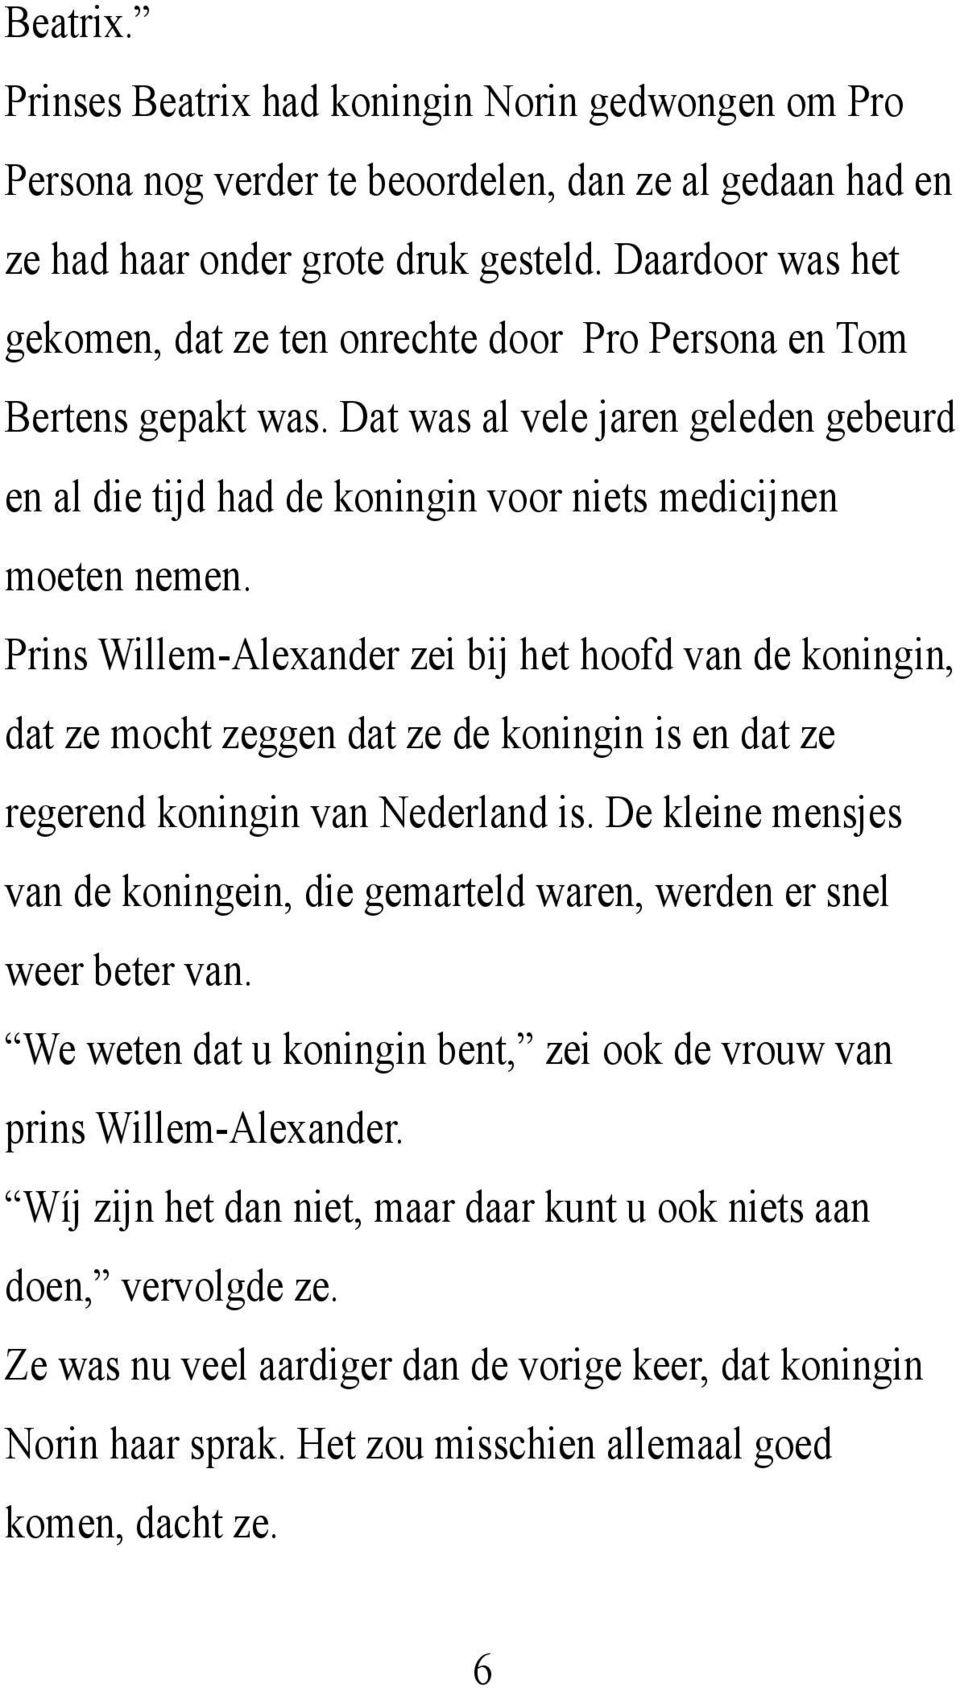 Prins Willem-Alexander zei bij het hoofd van de koningin, dat ze mocht zeggen dat ze de koningin is en dat ze regerend koningin van Nederland is.